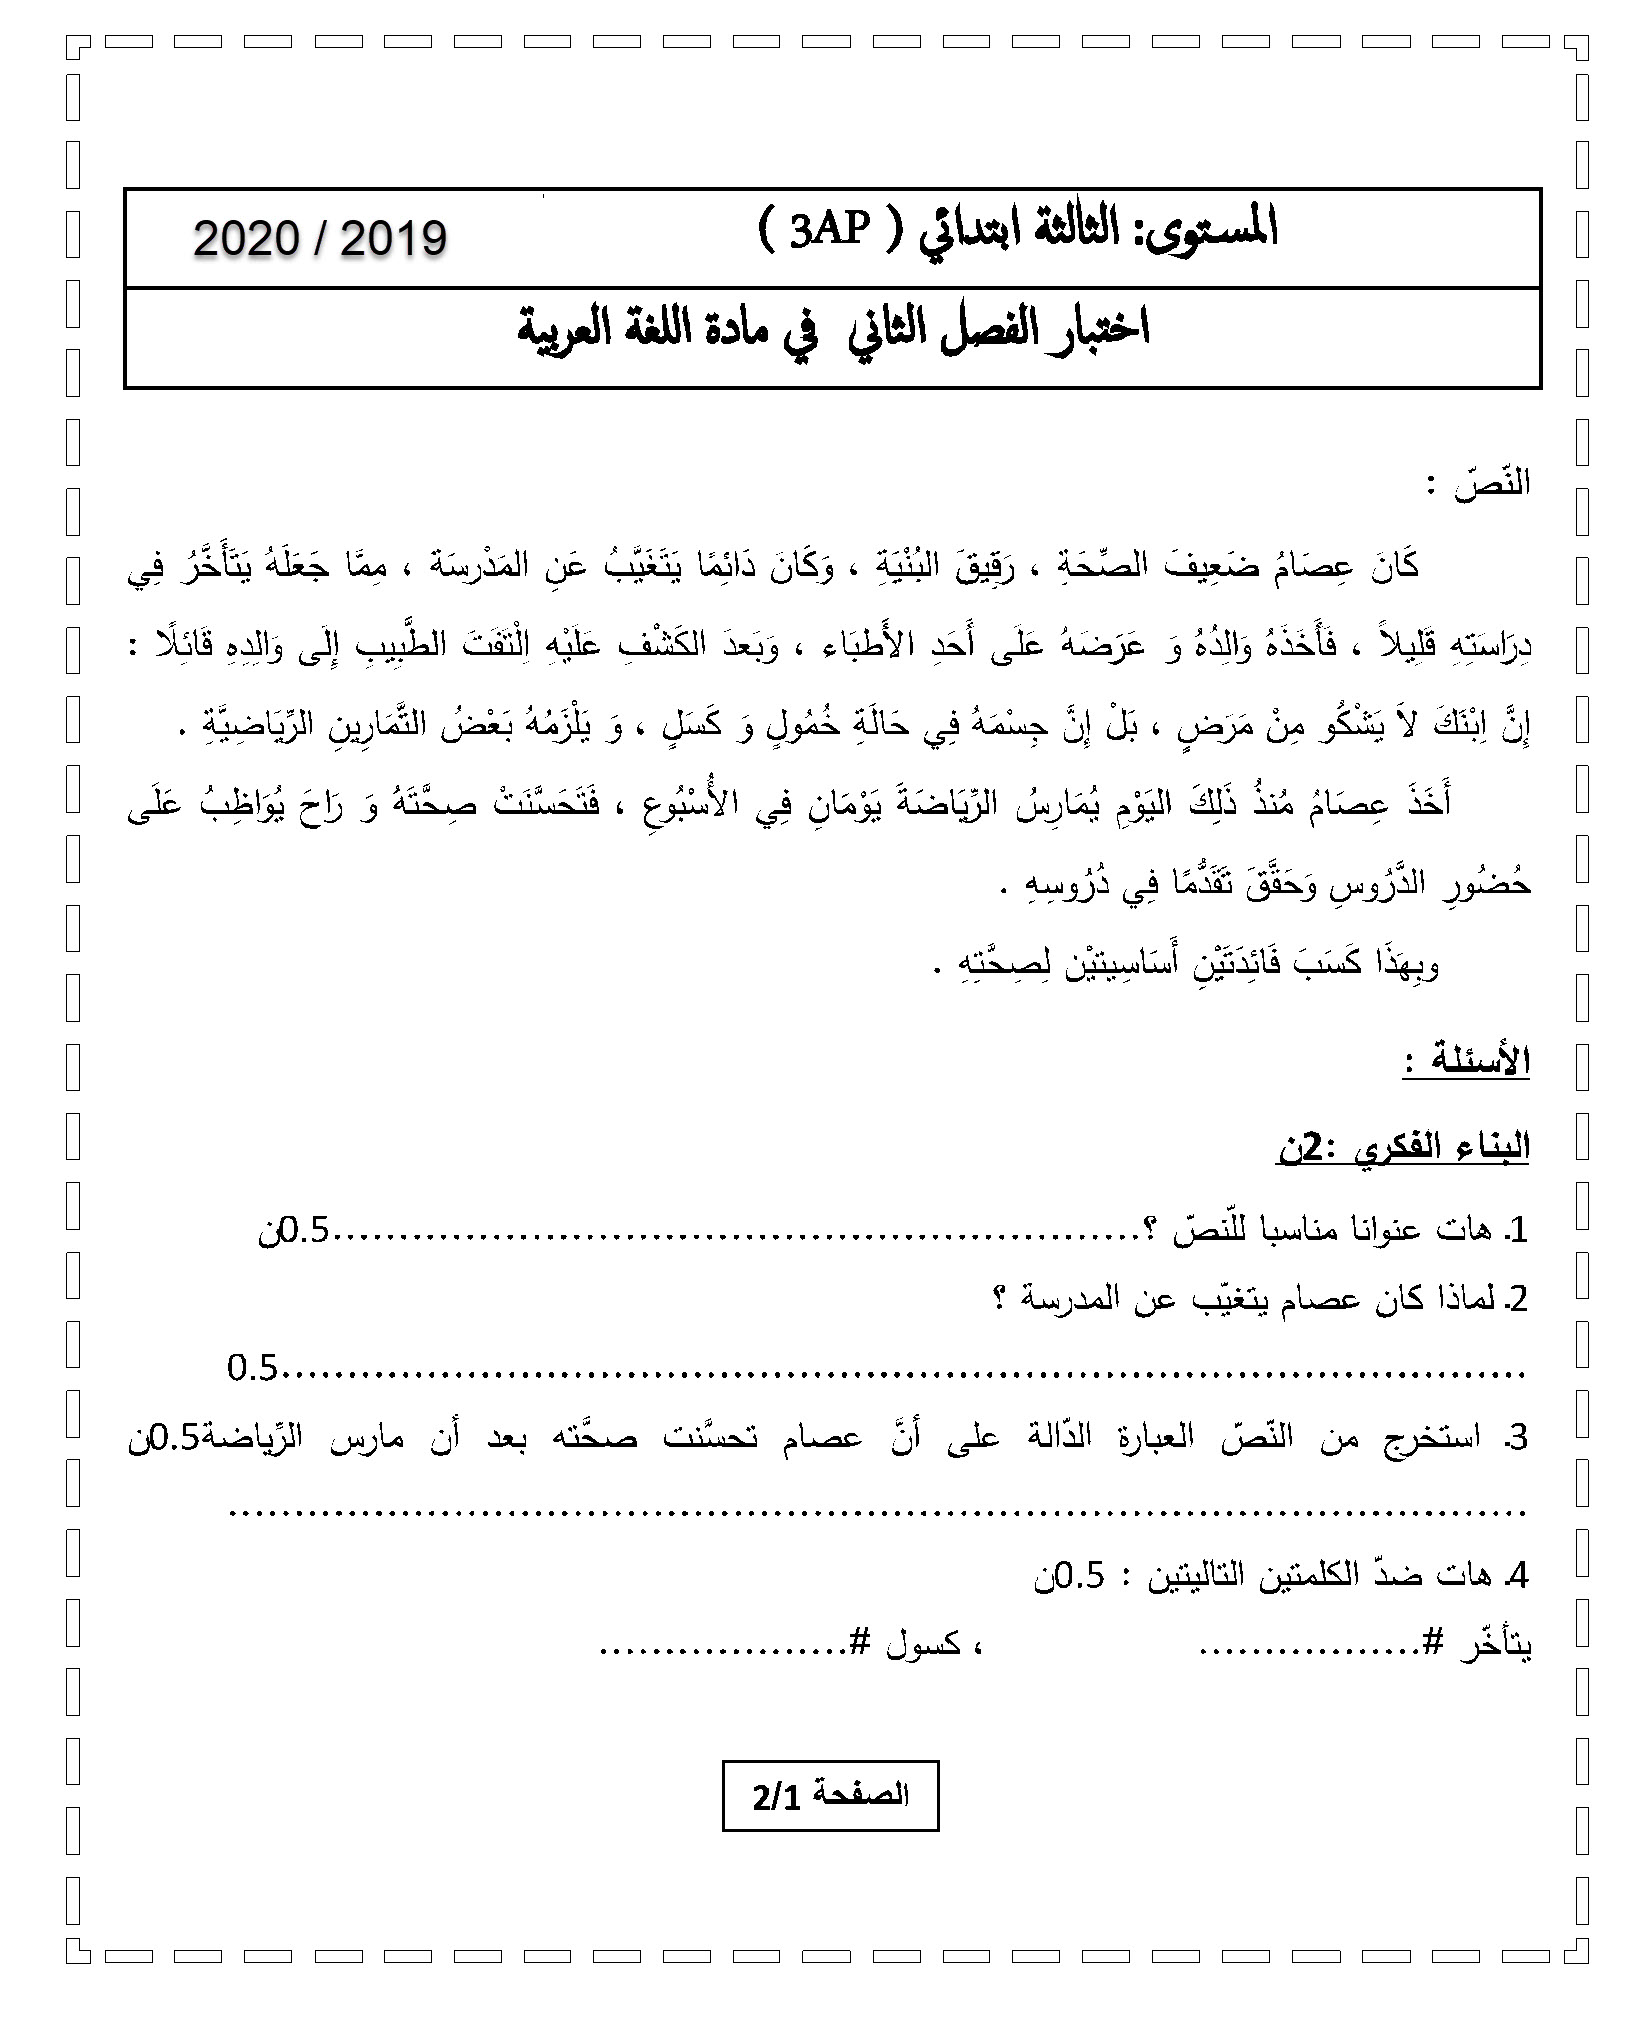 اختبار الفصل الثاني في اللغة العربية مع الحل | الثالثة ابتدائي | الموضوع 02